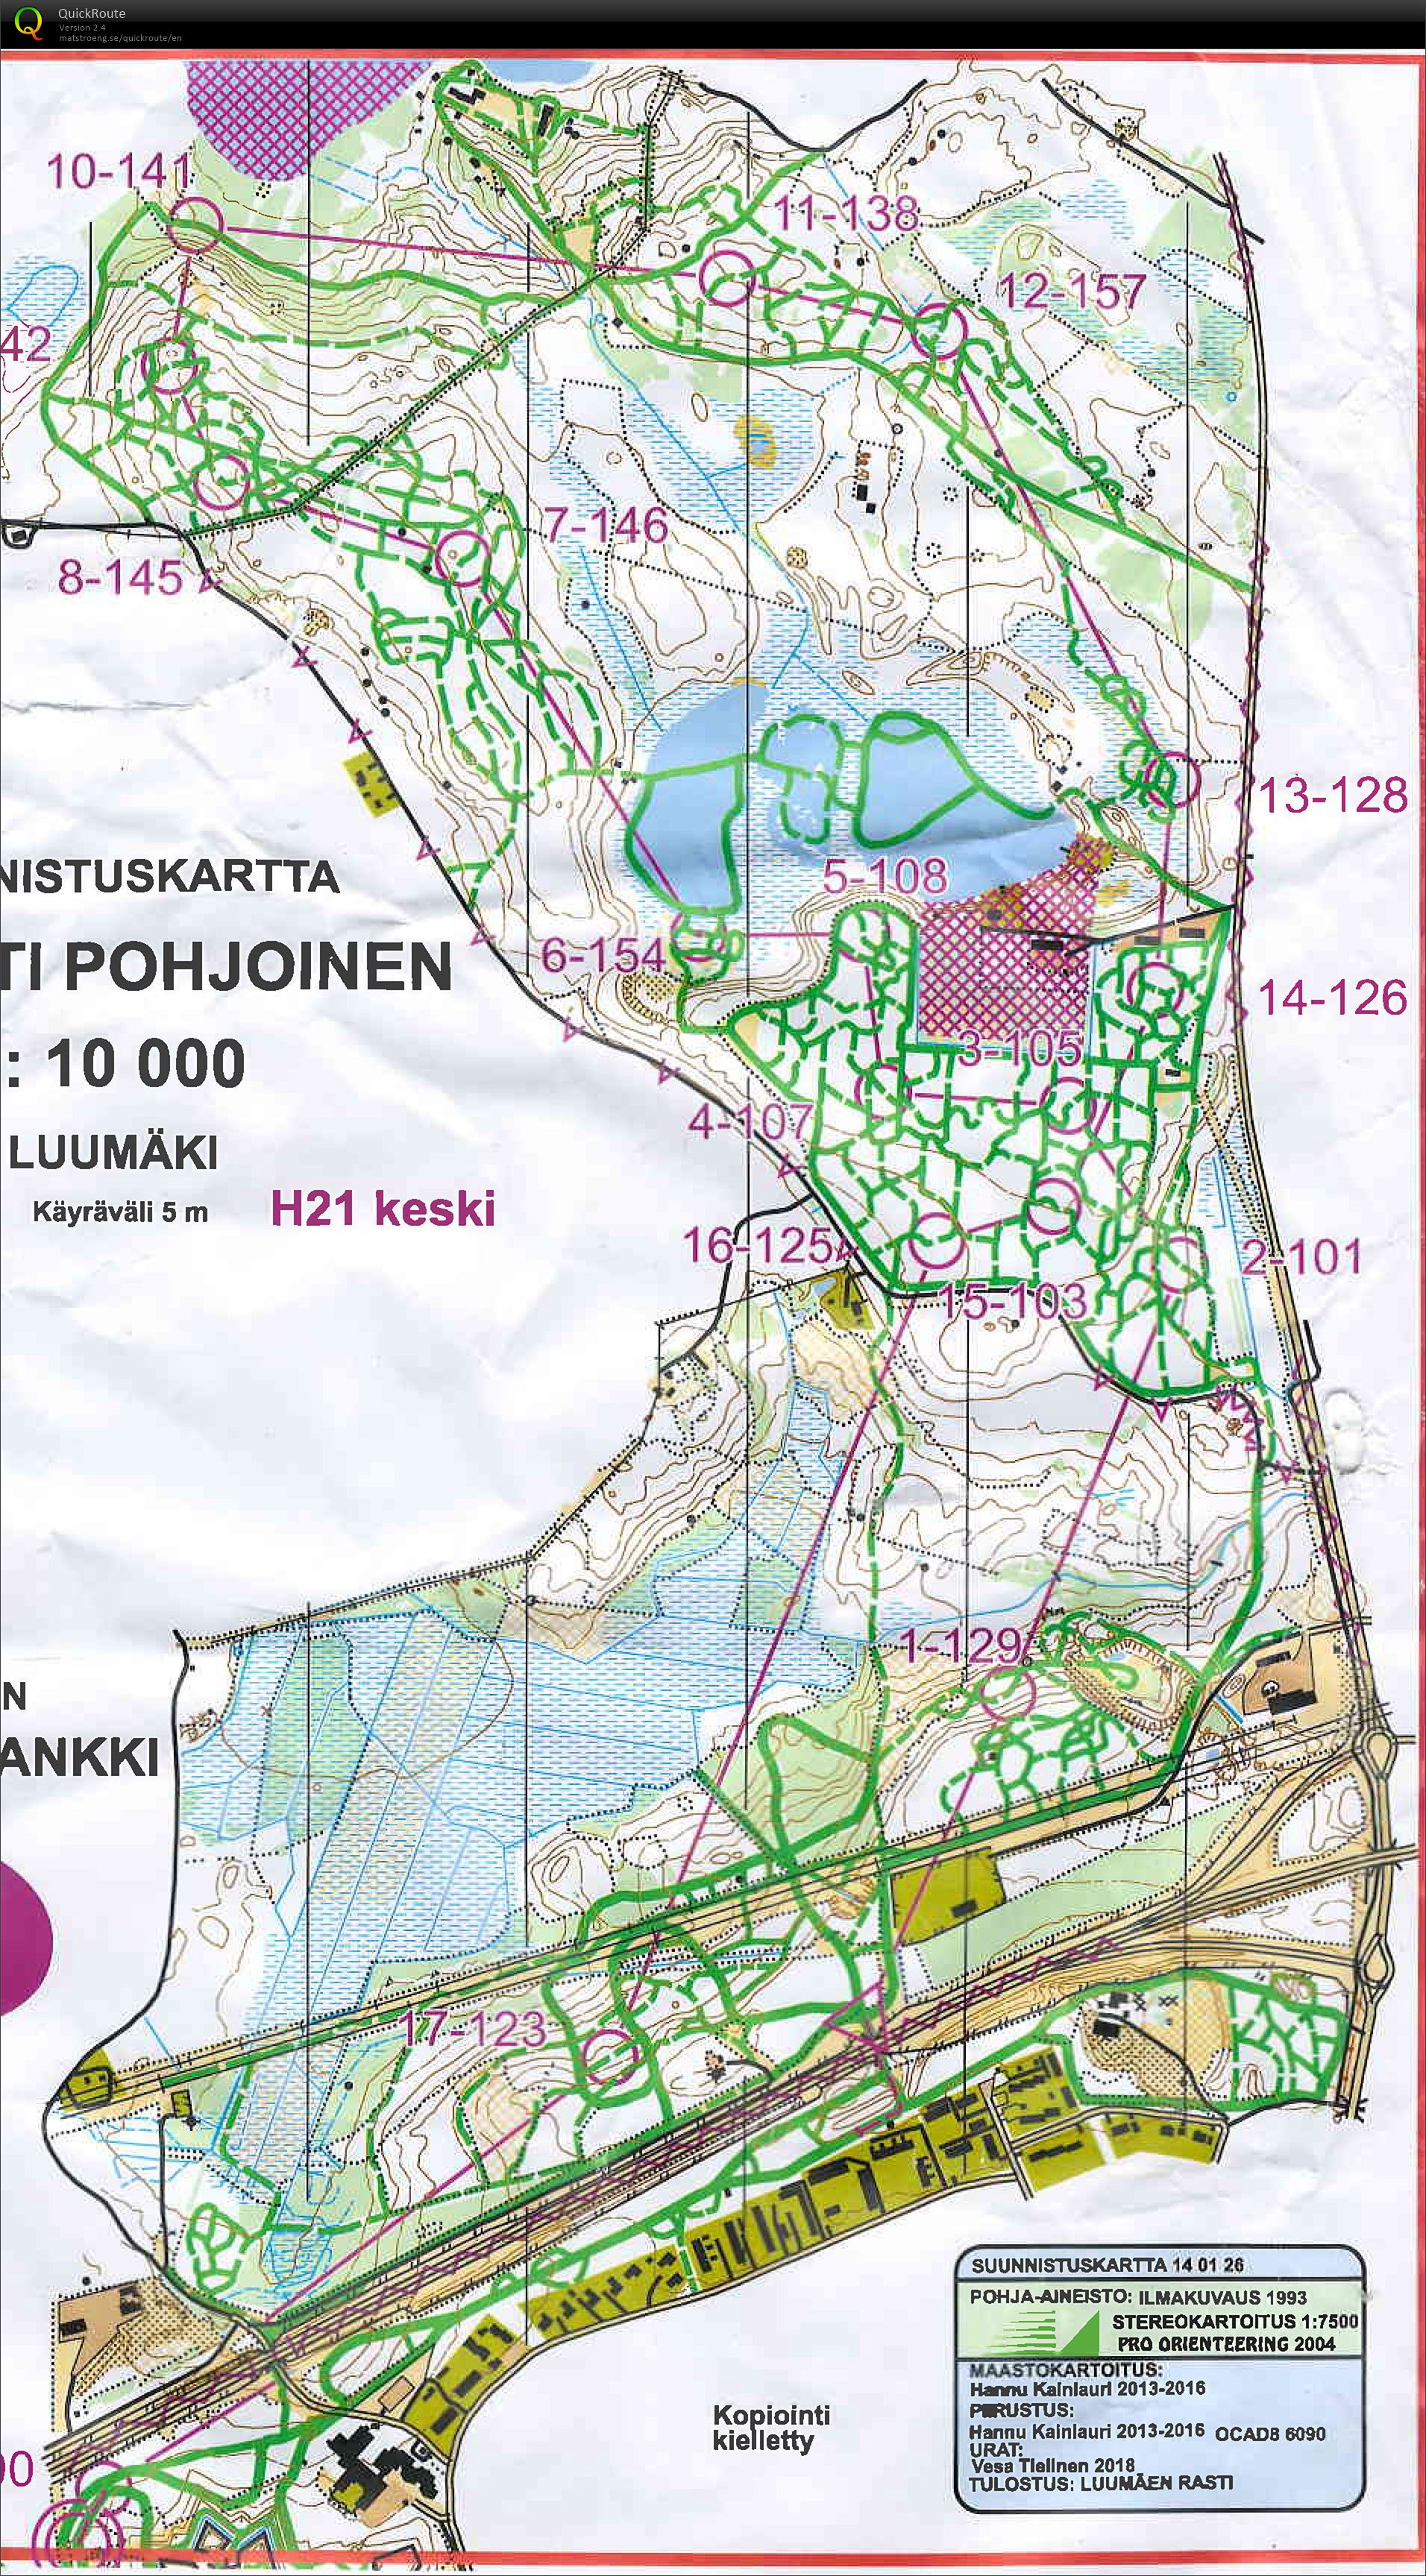 Luumäki hs -keski - January 27th 2018 - Orienteering Map from Pekka Varis